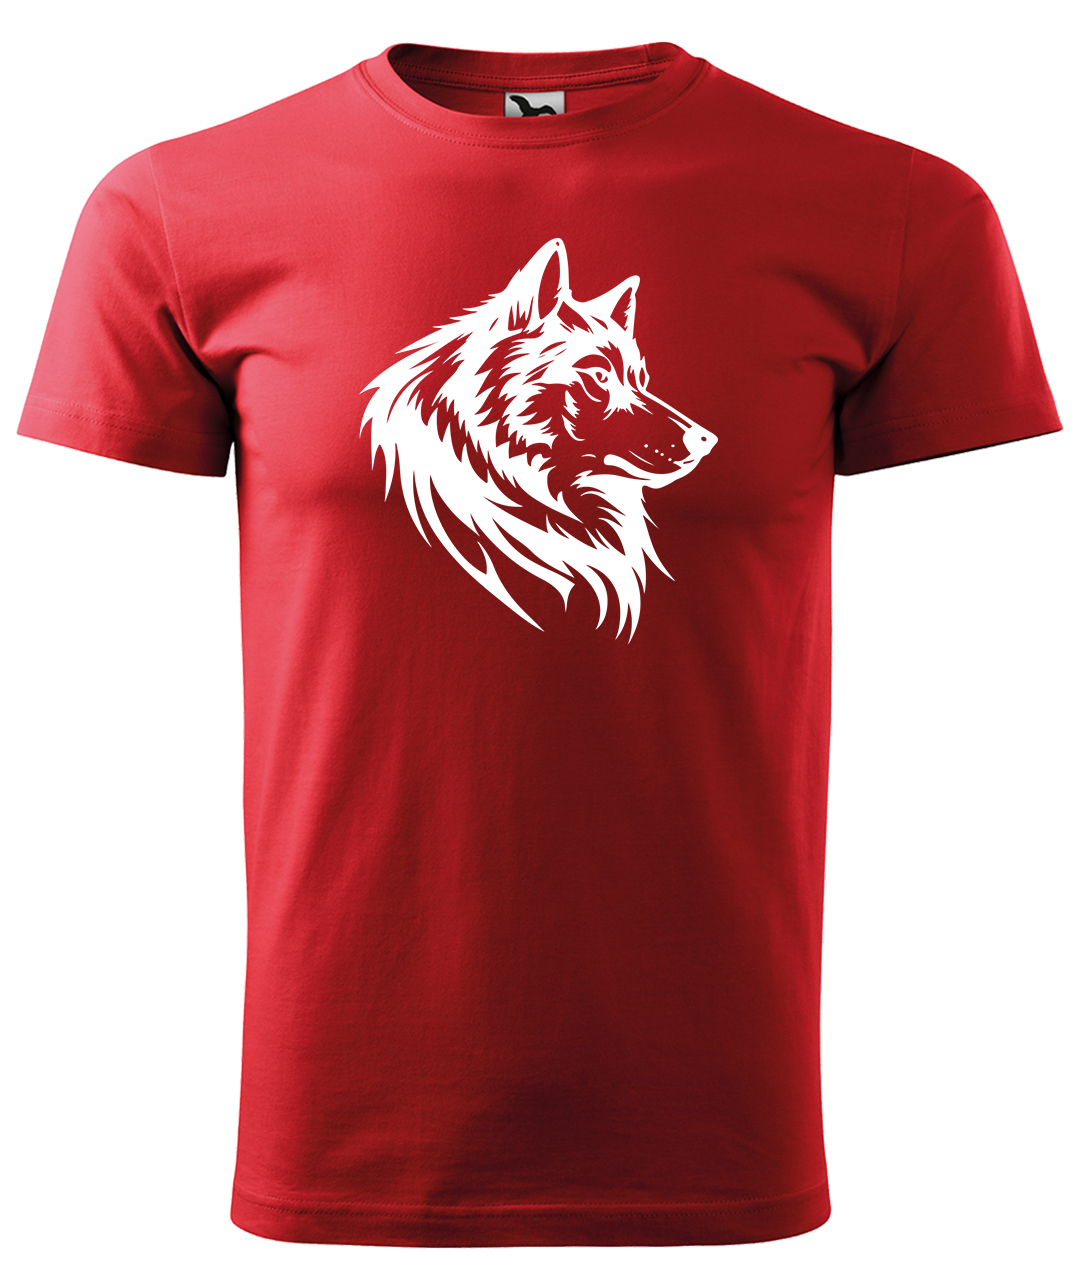 Dětské tričko s vlkem - Wolf Velikost: 6 let / 122 cm, Barva: Červená (07), Délka rukávu: Krátký rukáv